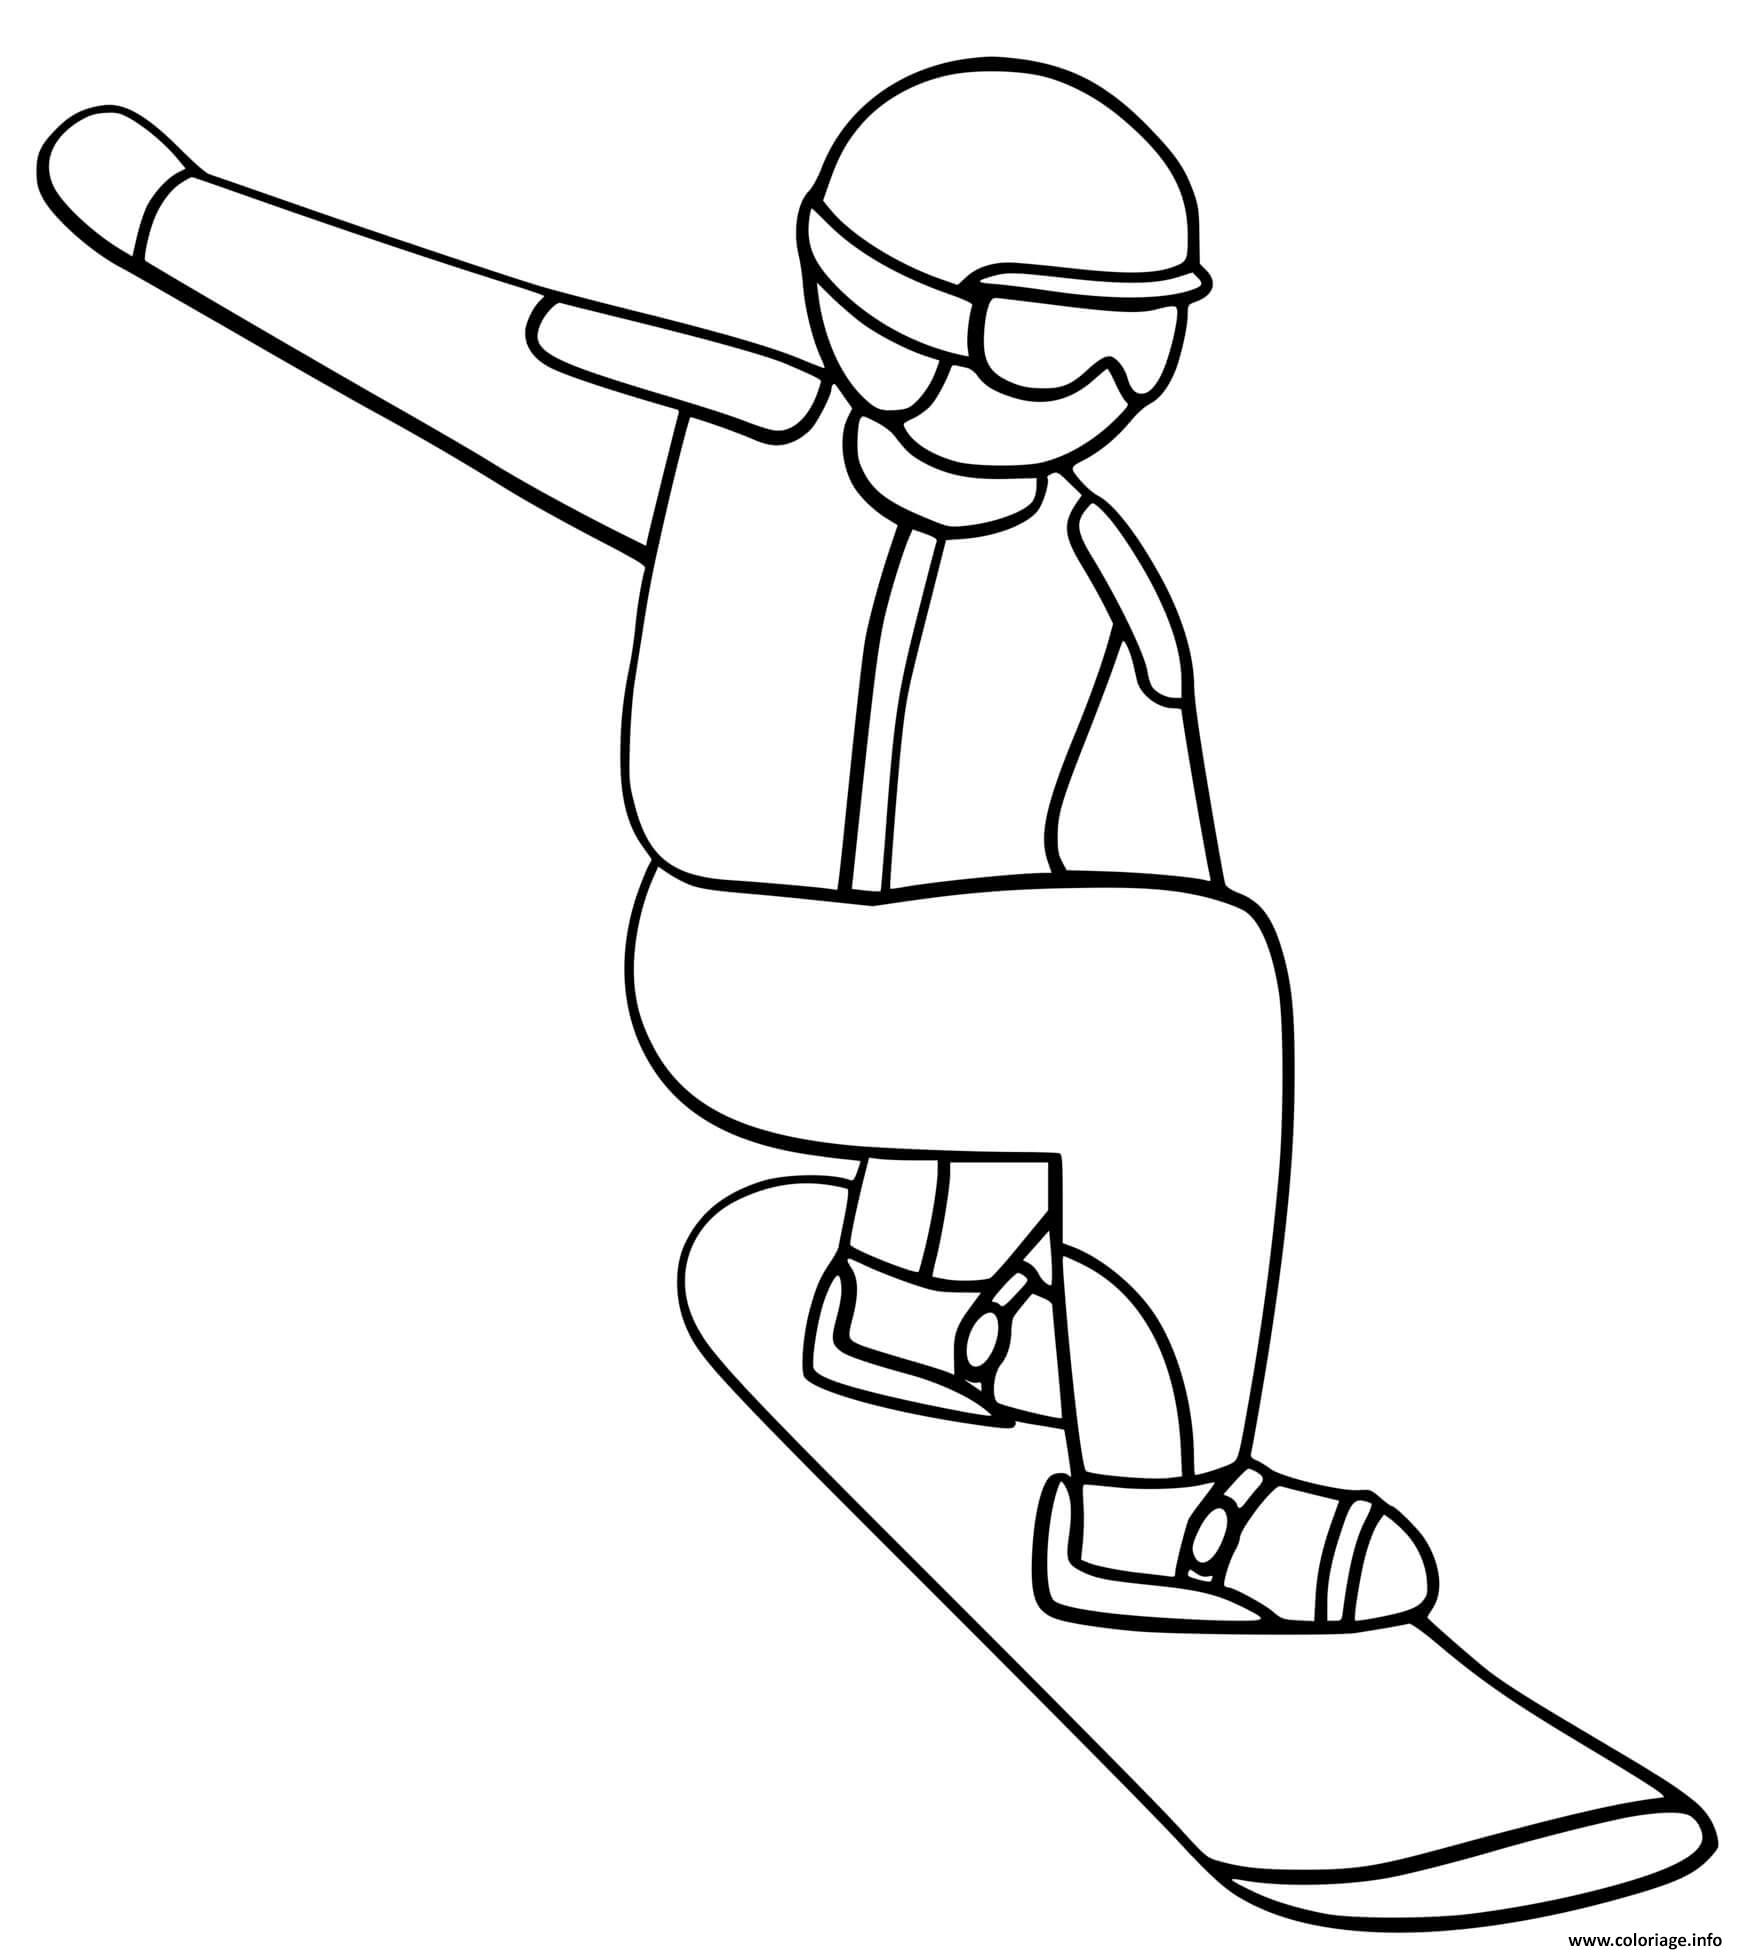 Dessin snowboard sport hiver Coloriage Gratuit à Imprimer